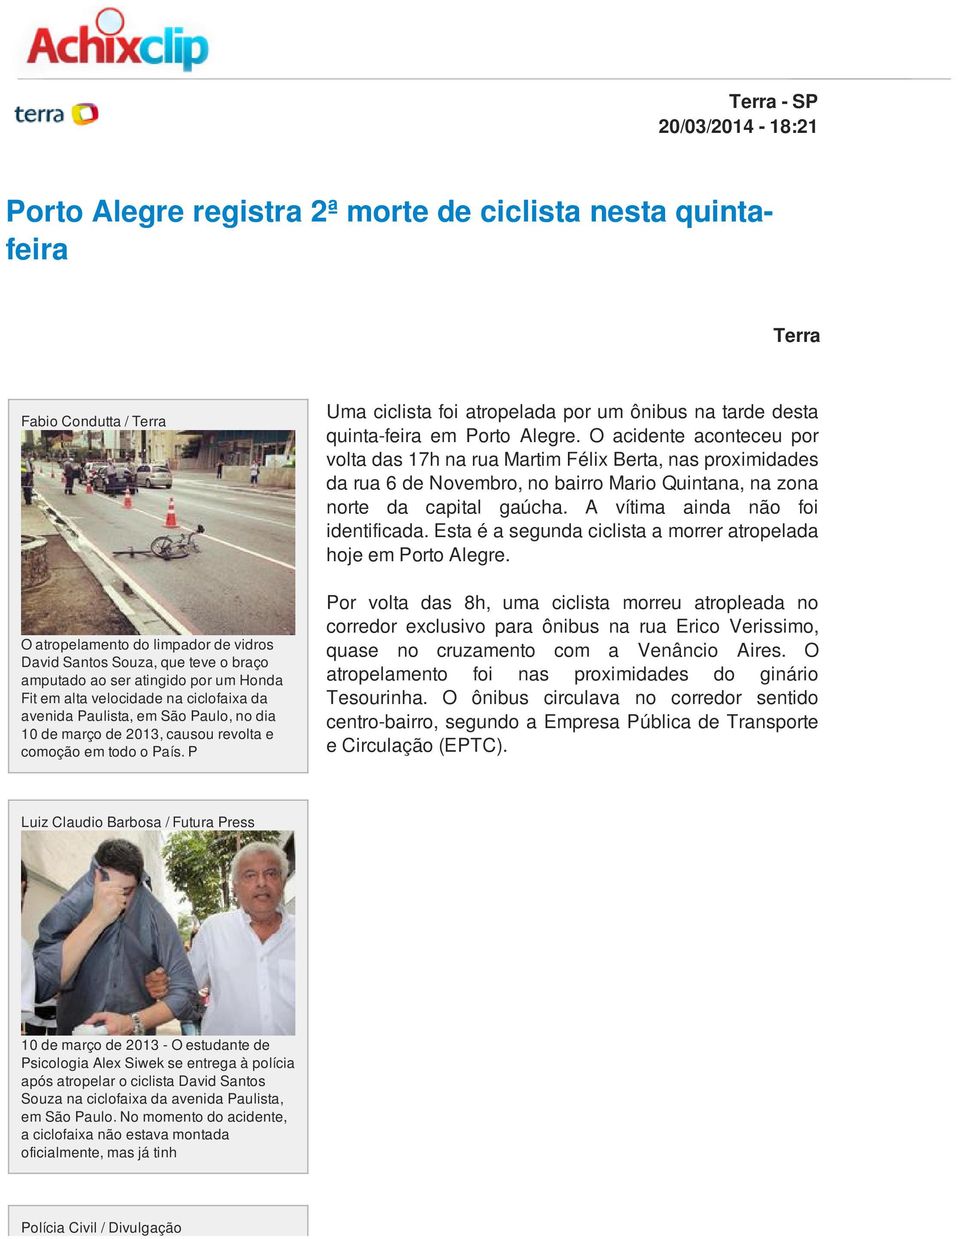 P Uma ciclista foi atropelada por um ônibus na tarde desta quinta-feira em Porto Alegre.